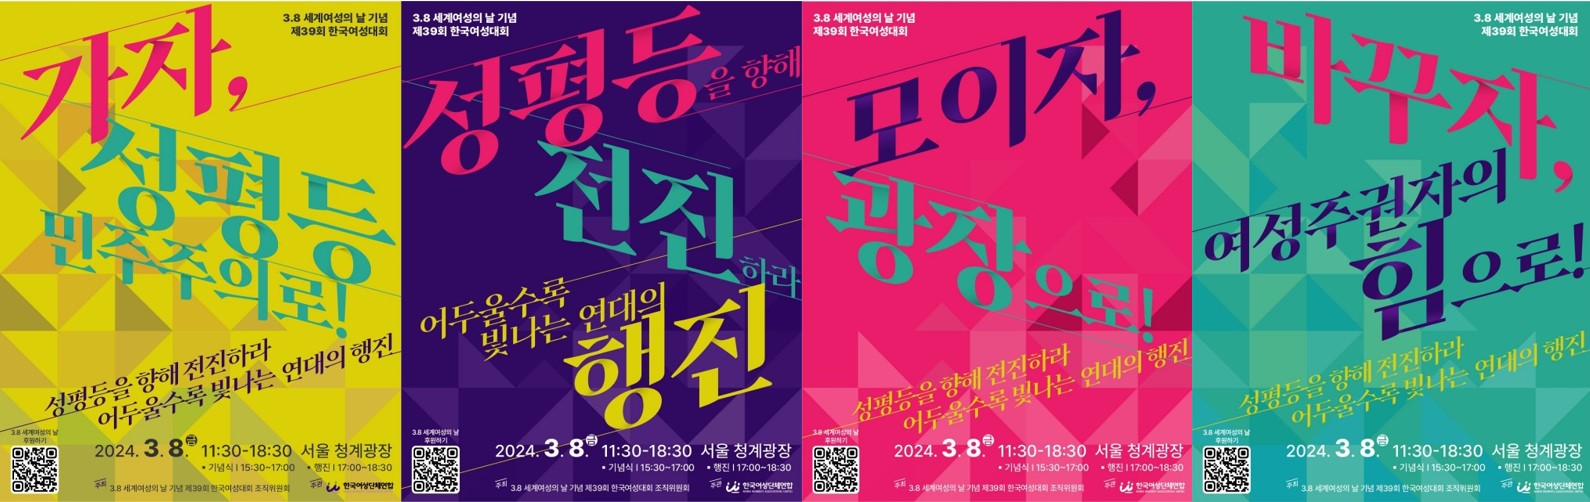 제39회 한국여성대회